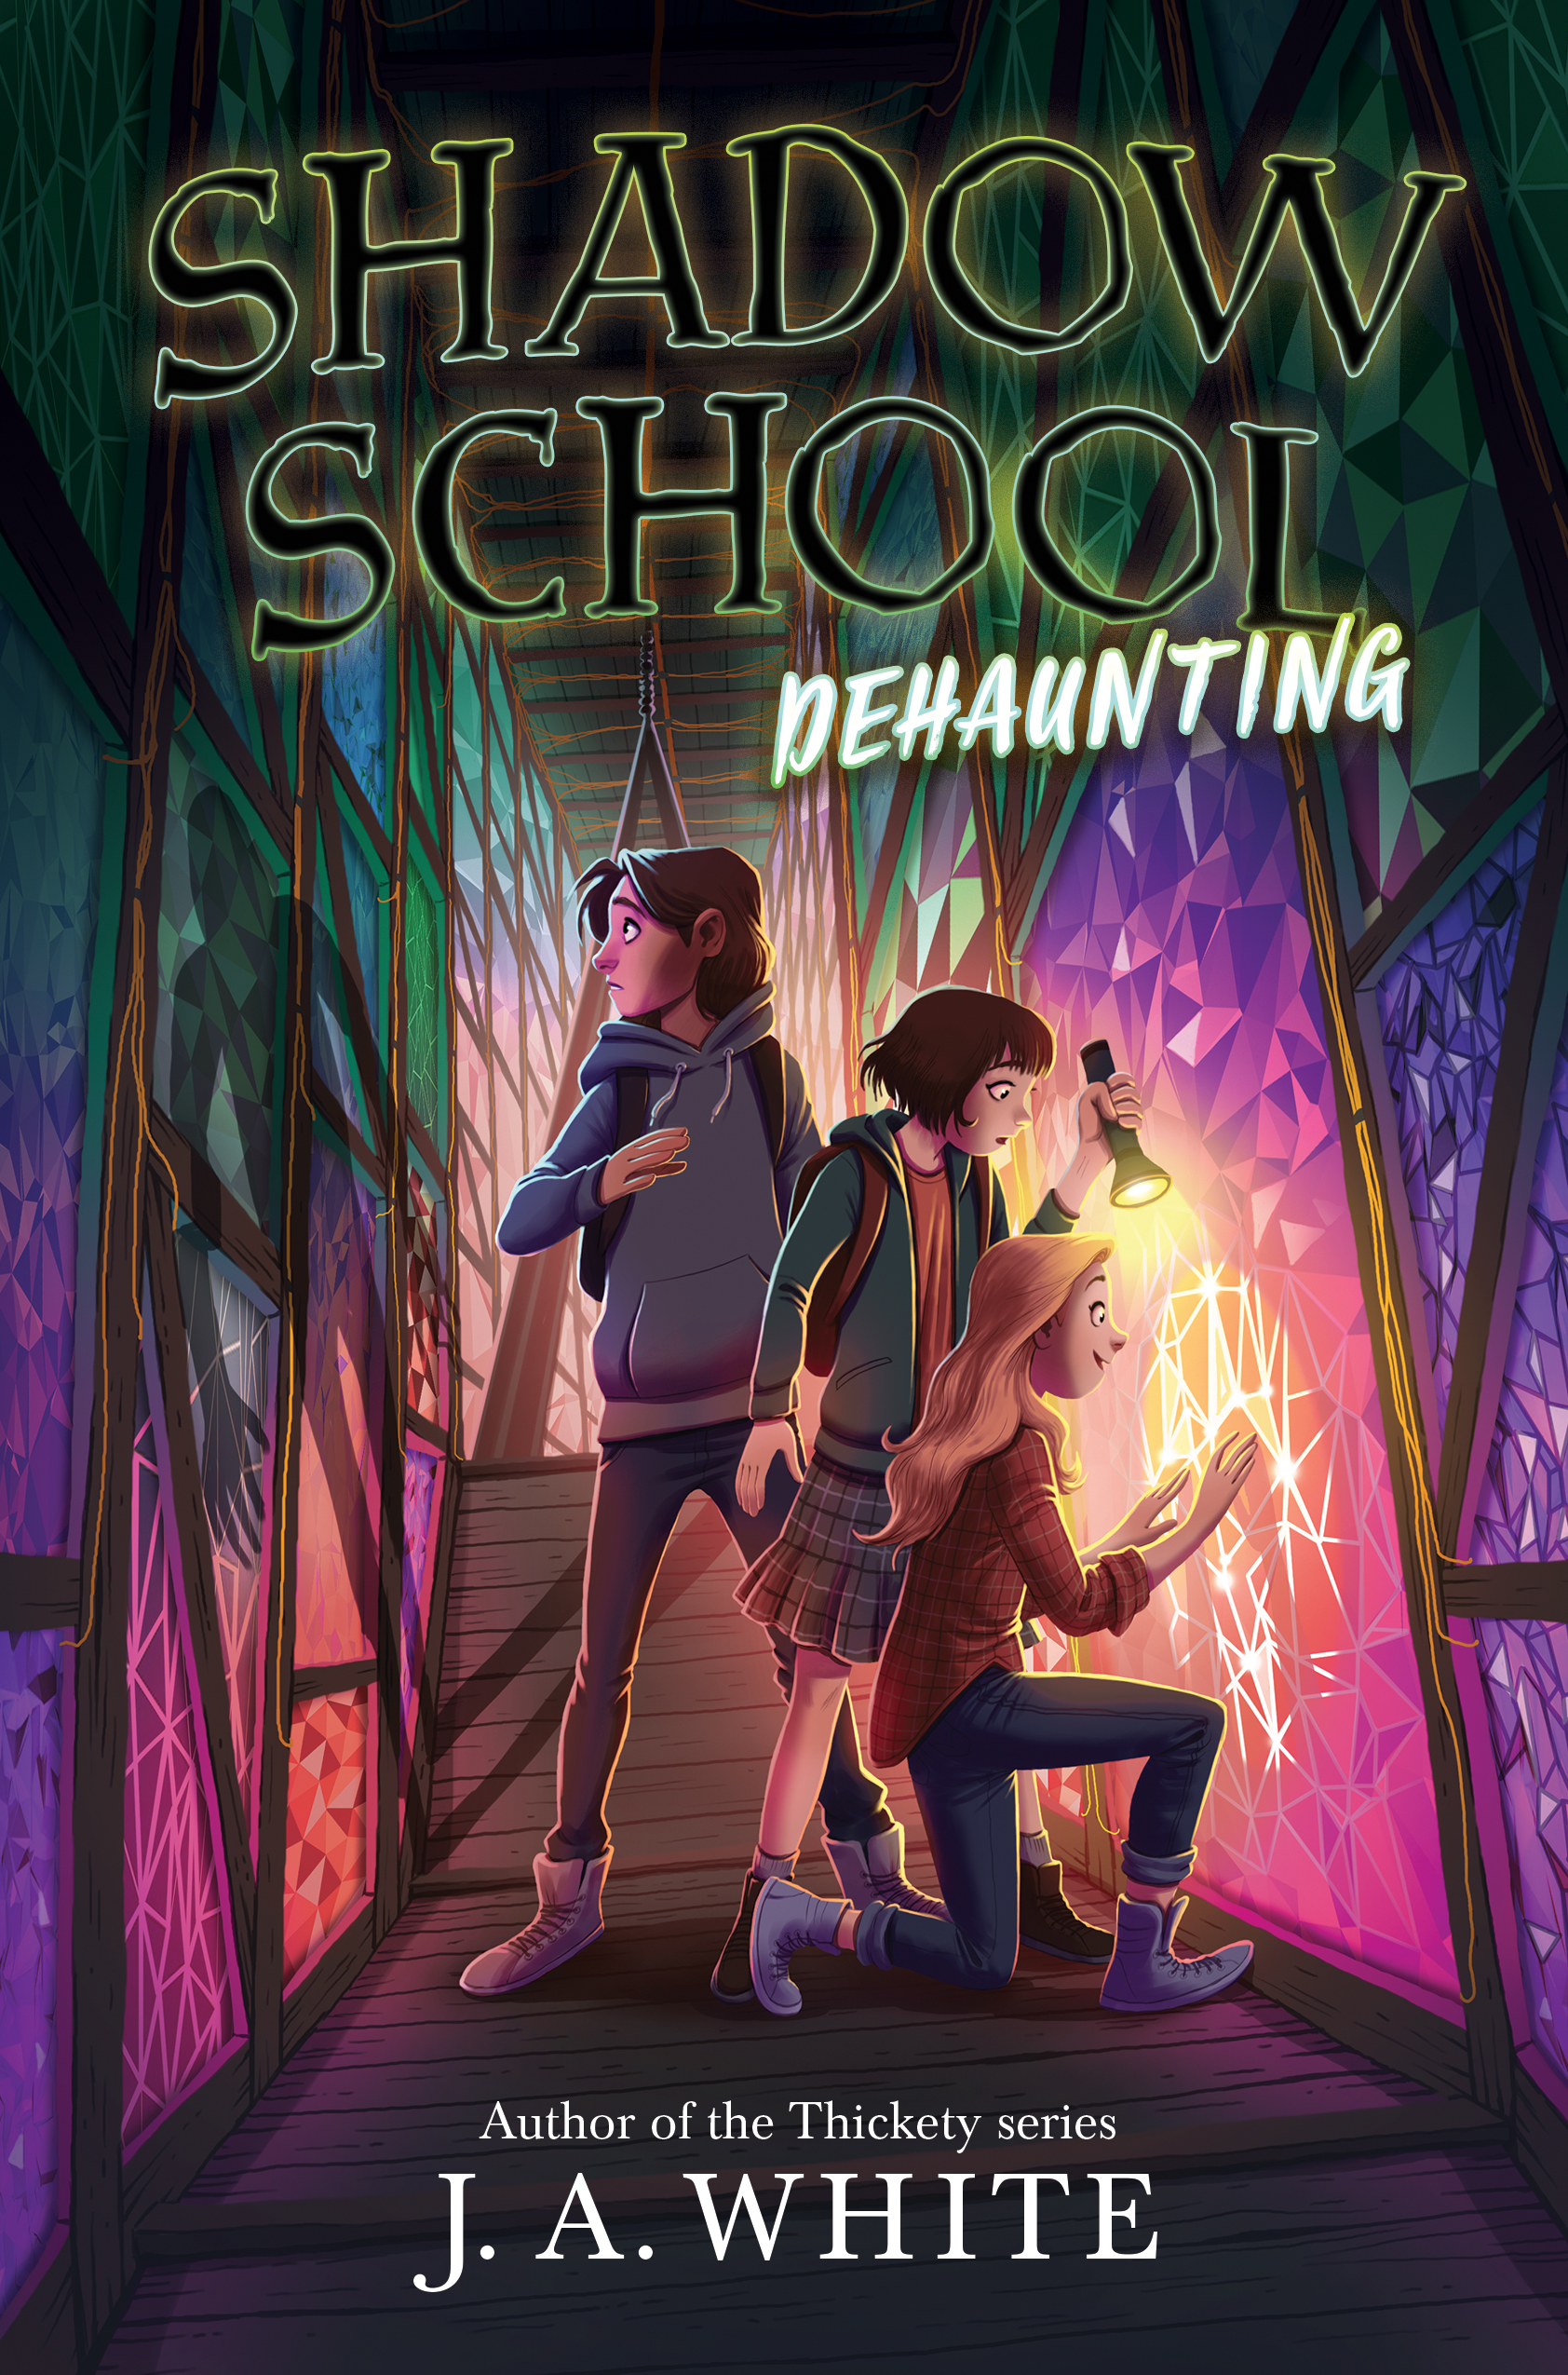 Dehaunting (Shadow School, #2)